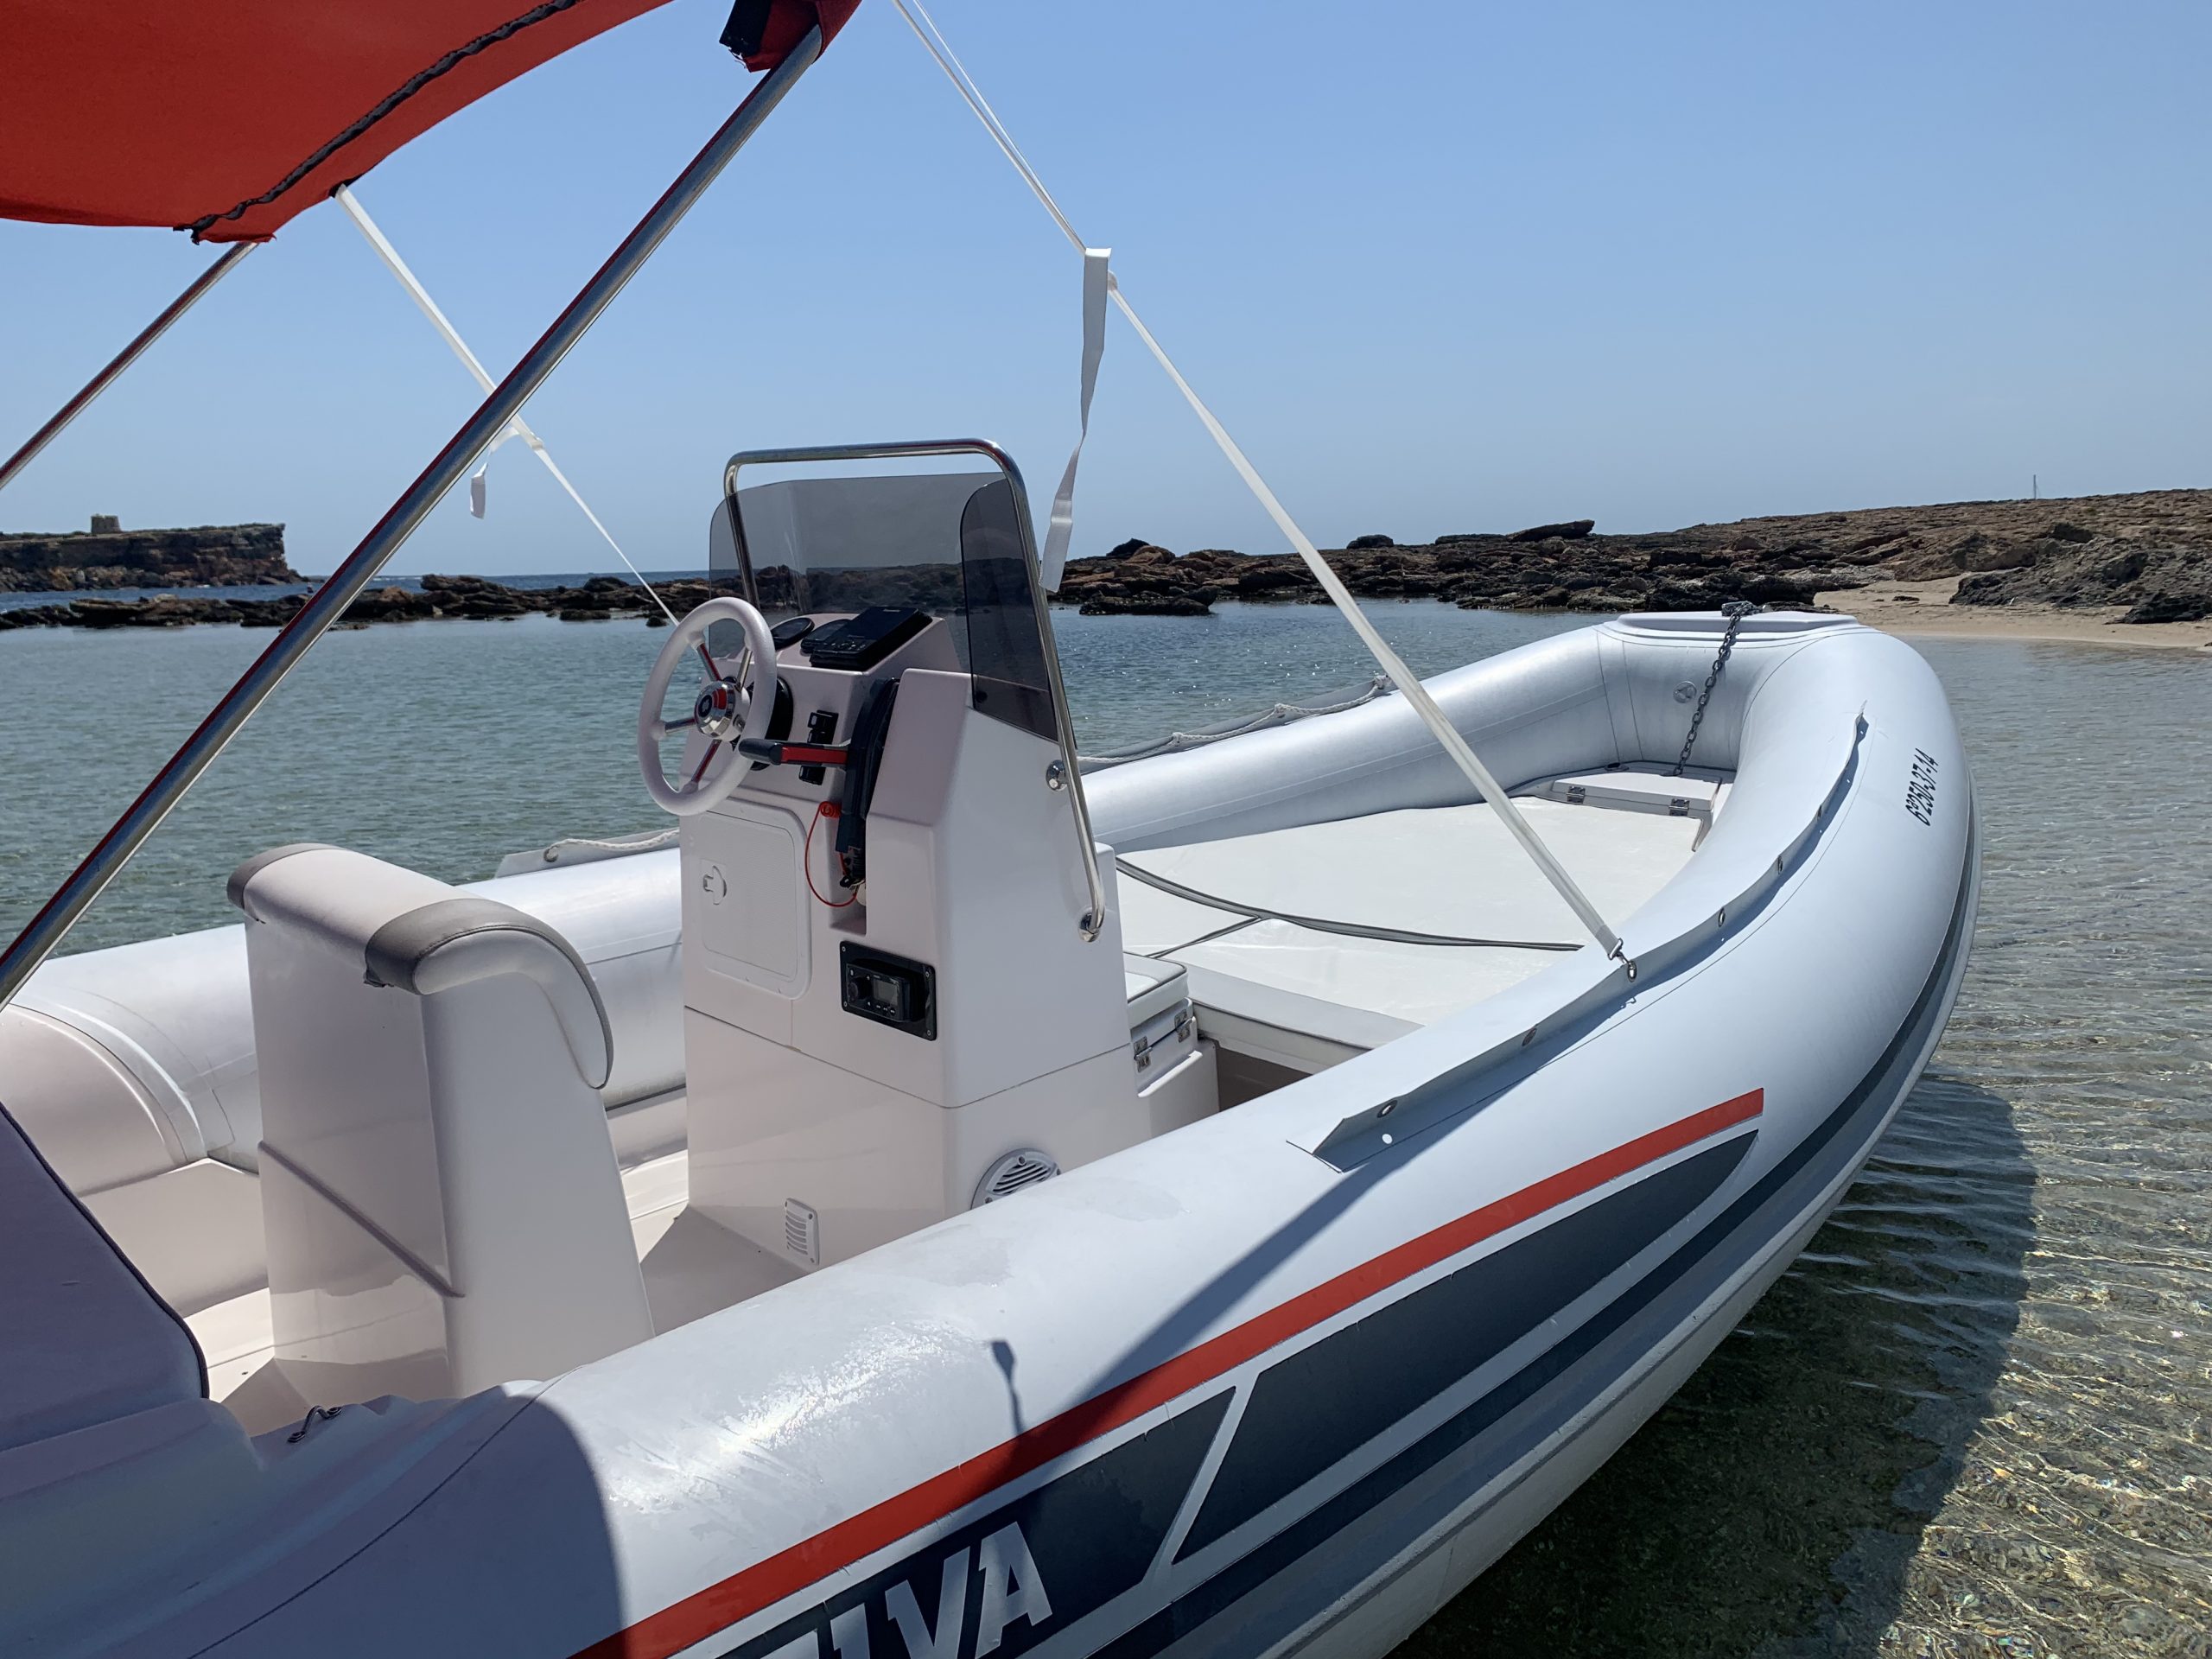 Alquiler rent location llogar barco boat bateau ibiza Selva650